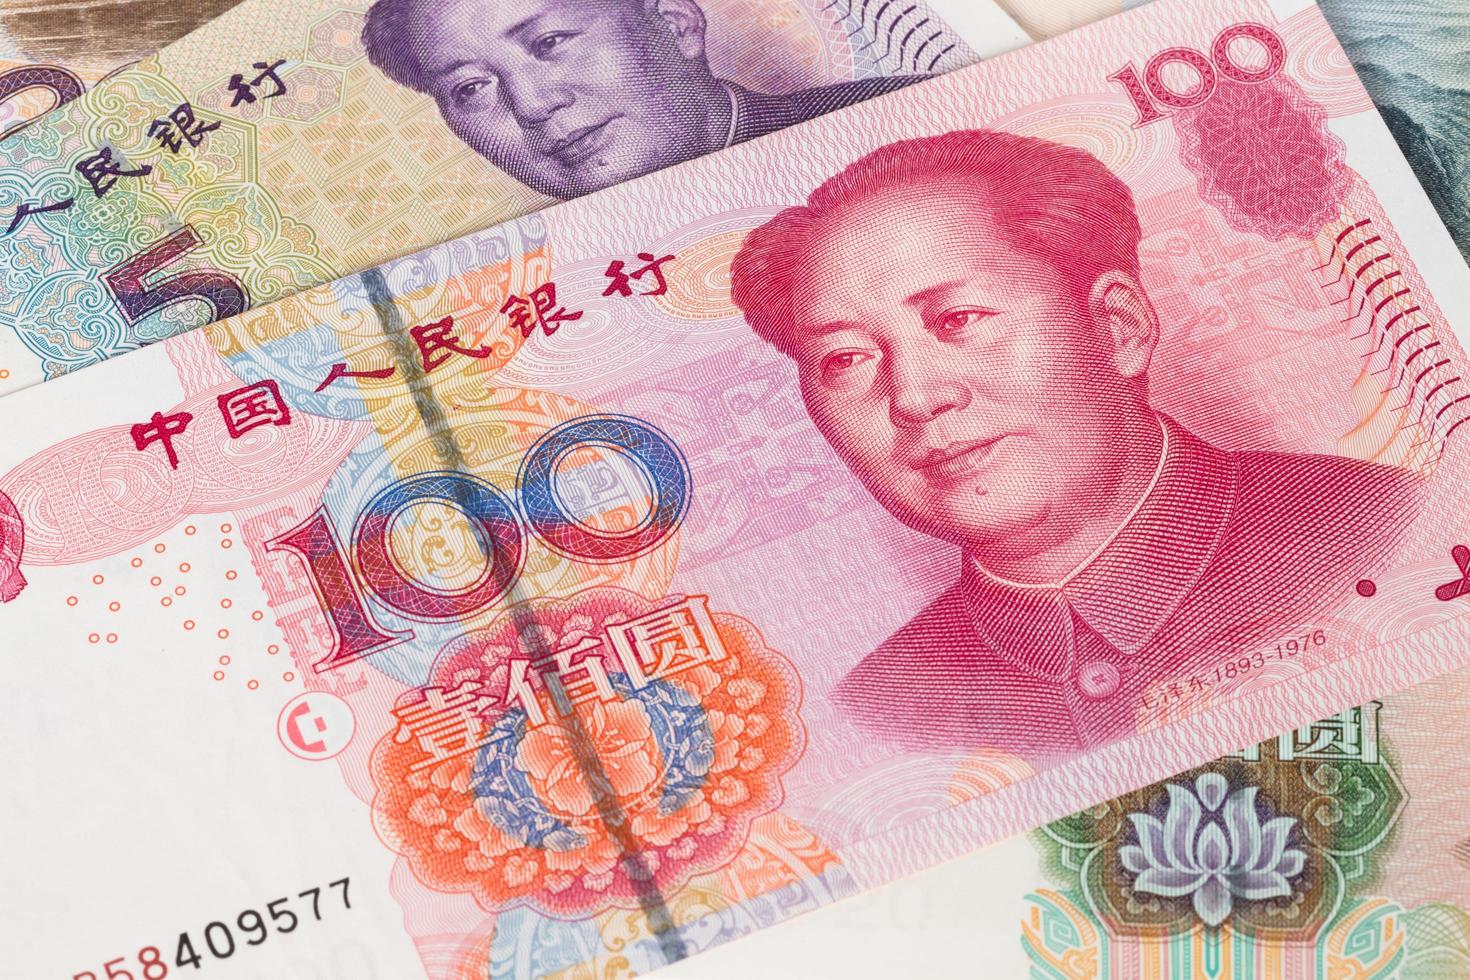 Gros plan de billets de banque en argent chinois photo